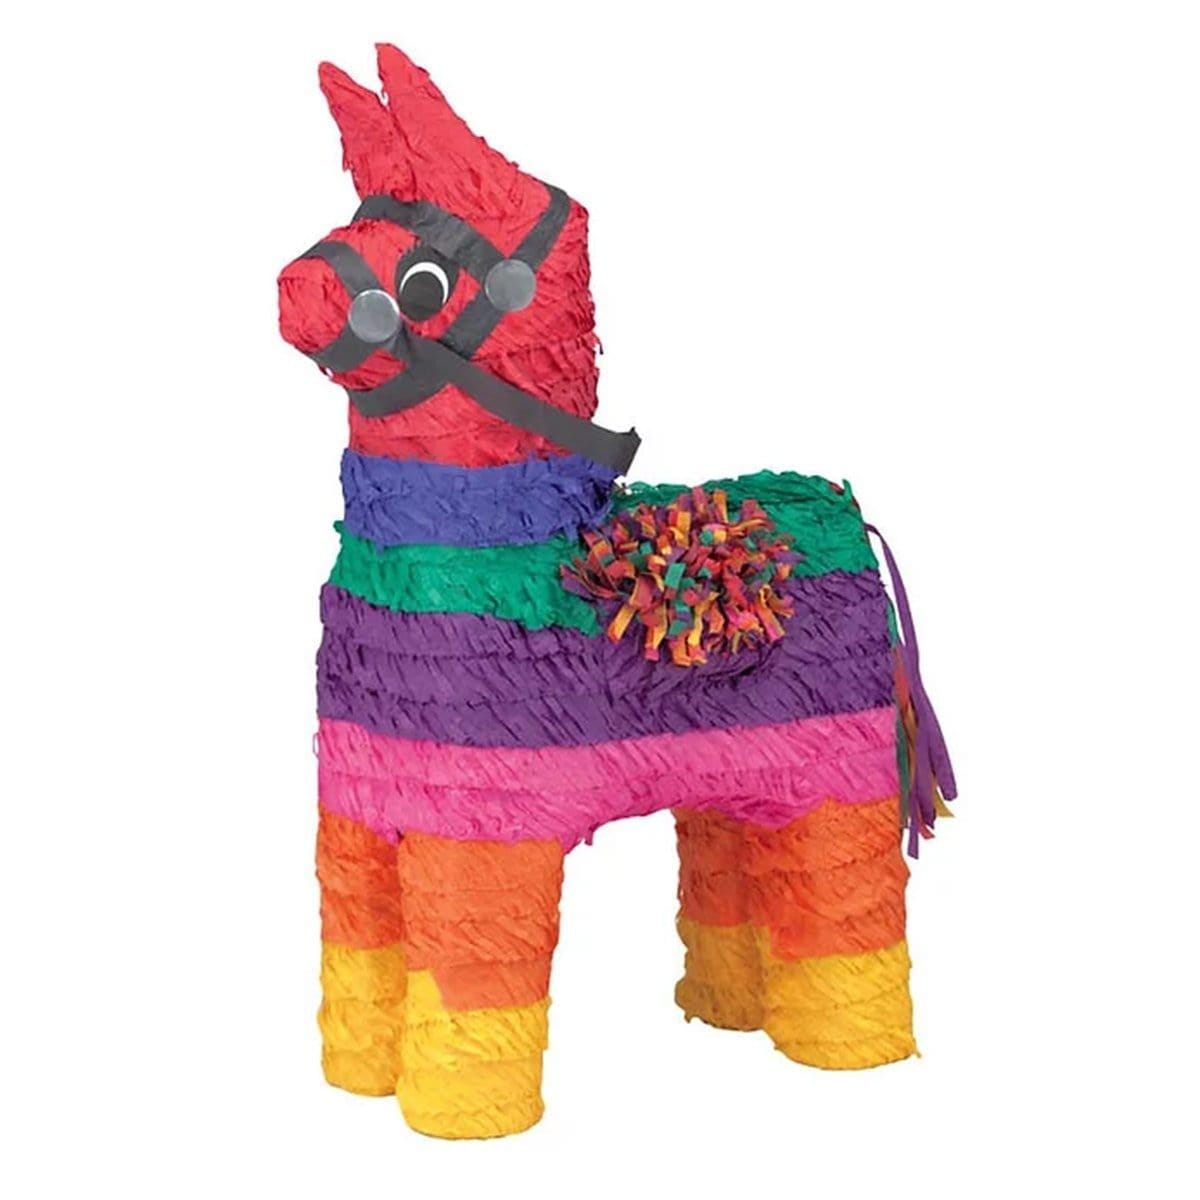 Buy Pinatas Burro Piñata sold at Party Expert